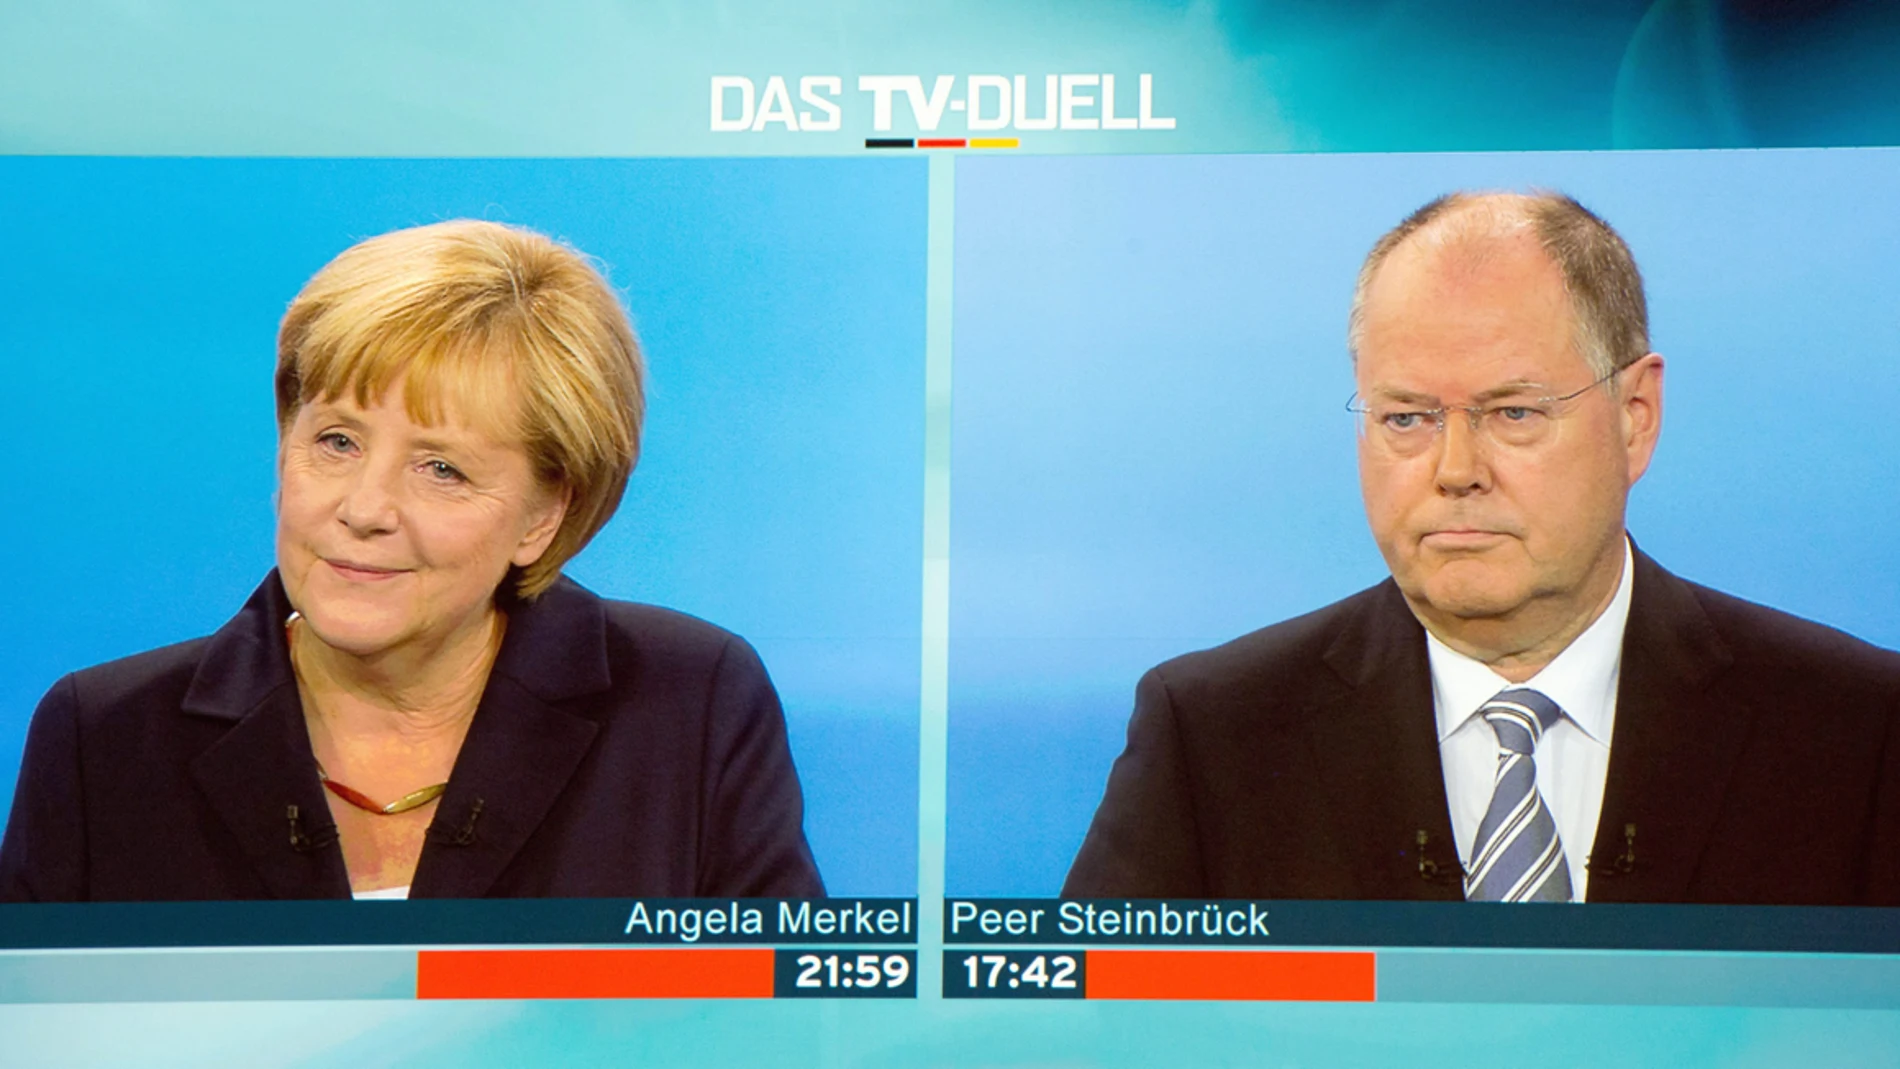  Angela Merkel frente a su rival socialdemócrata Peer Steinbrueck, durante un debate televisivo.